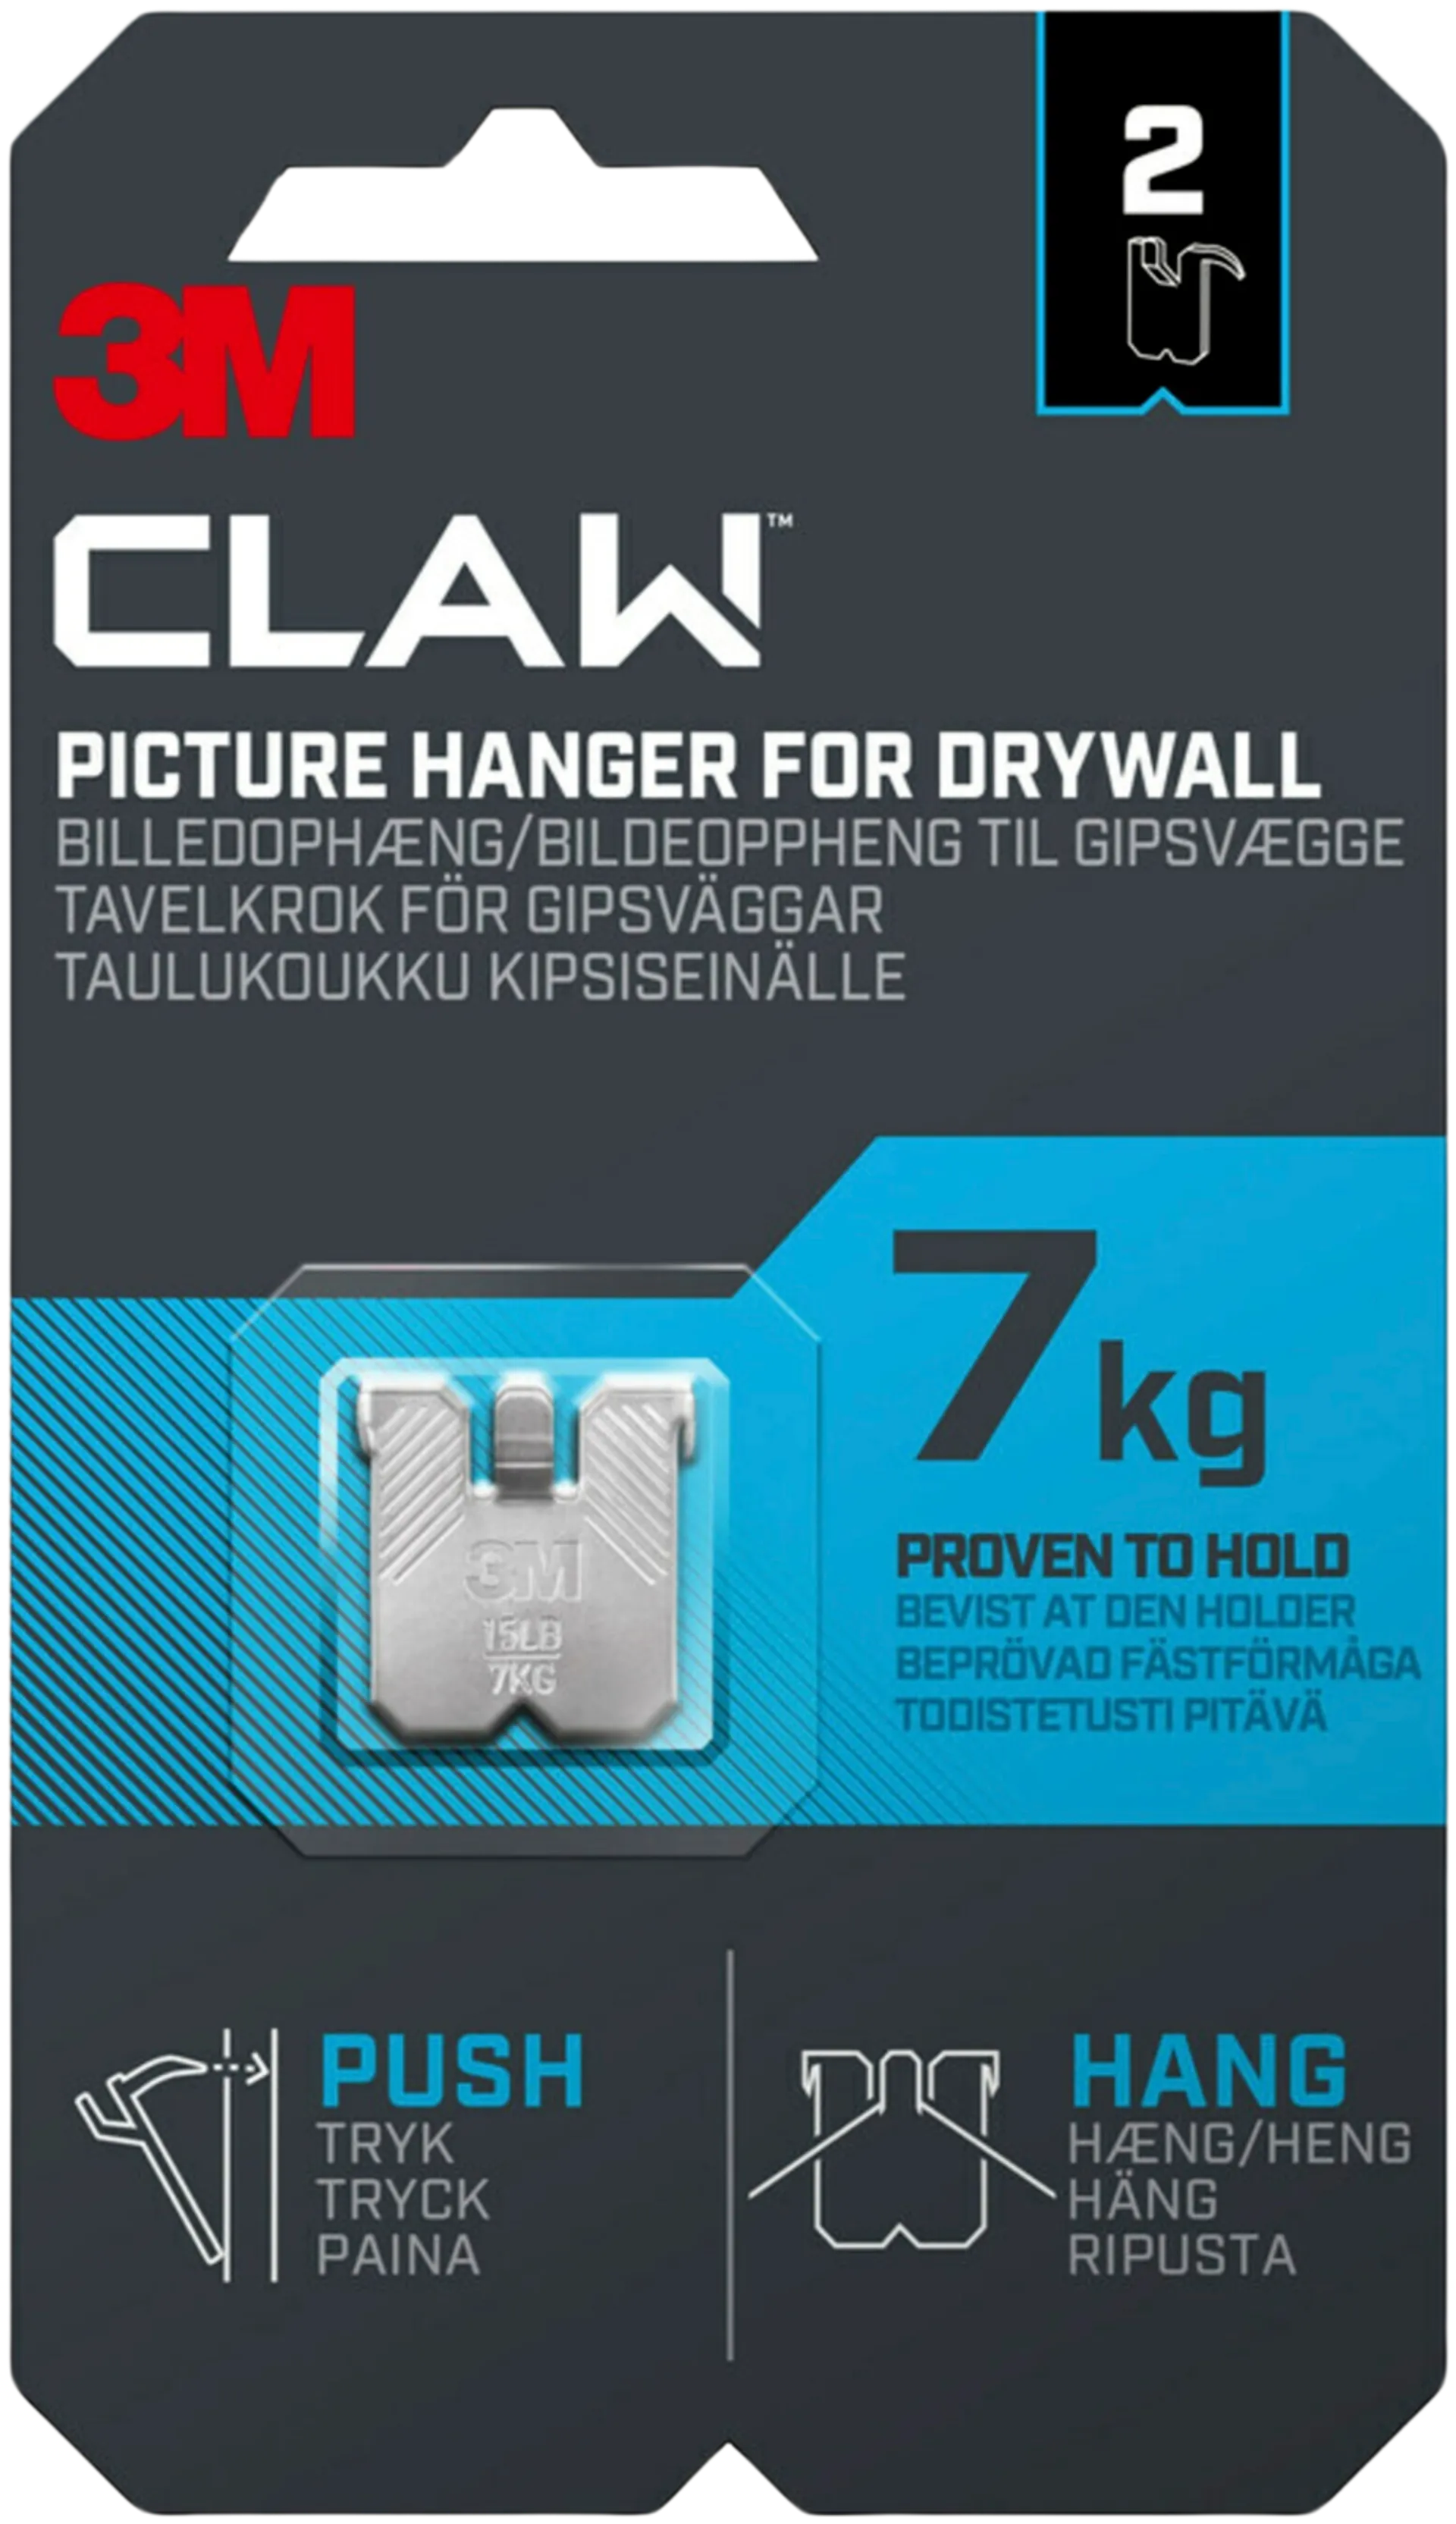 3M CLAW™-taulukoukku kipsilevylle, 7 kg 3PH7-2UKN, 2 ripustuskoukkua - 1